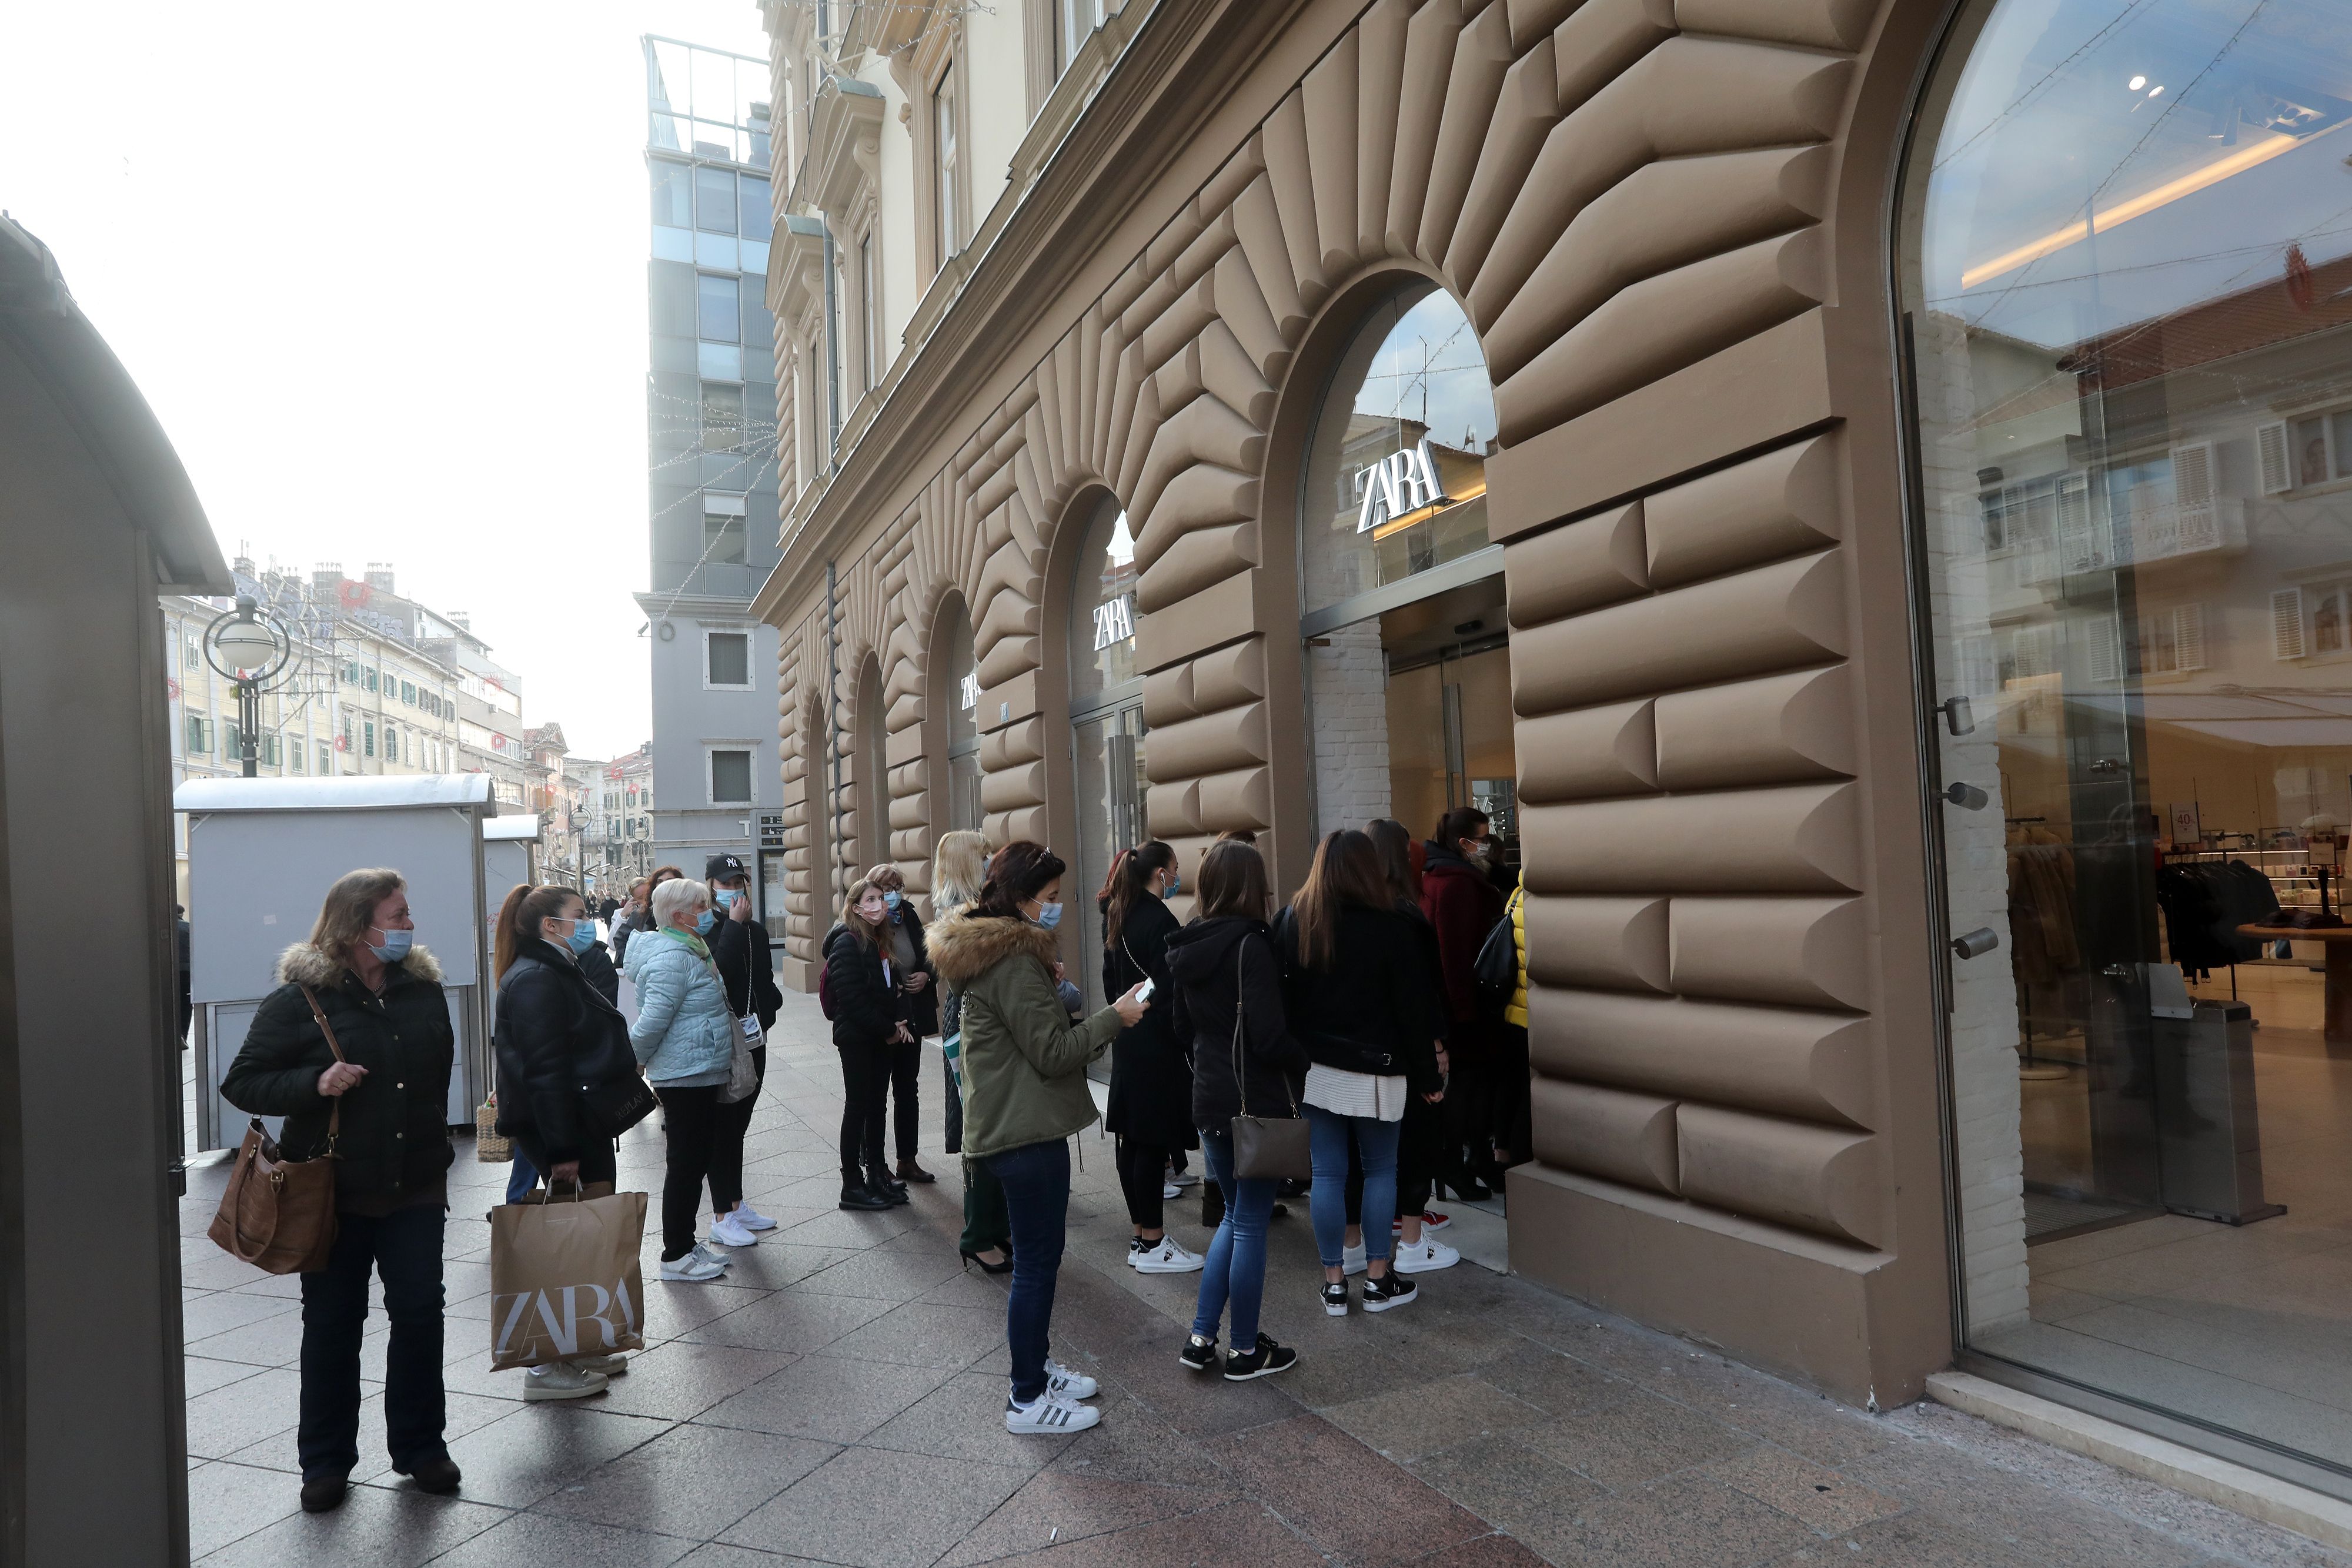 Gužva ispred riječke Zare: Mnogobrojni kupci čekali otvorenje trgovine i popuste za Crni petak